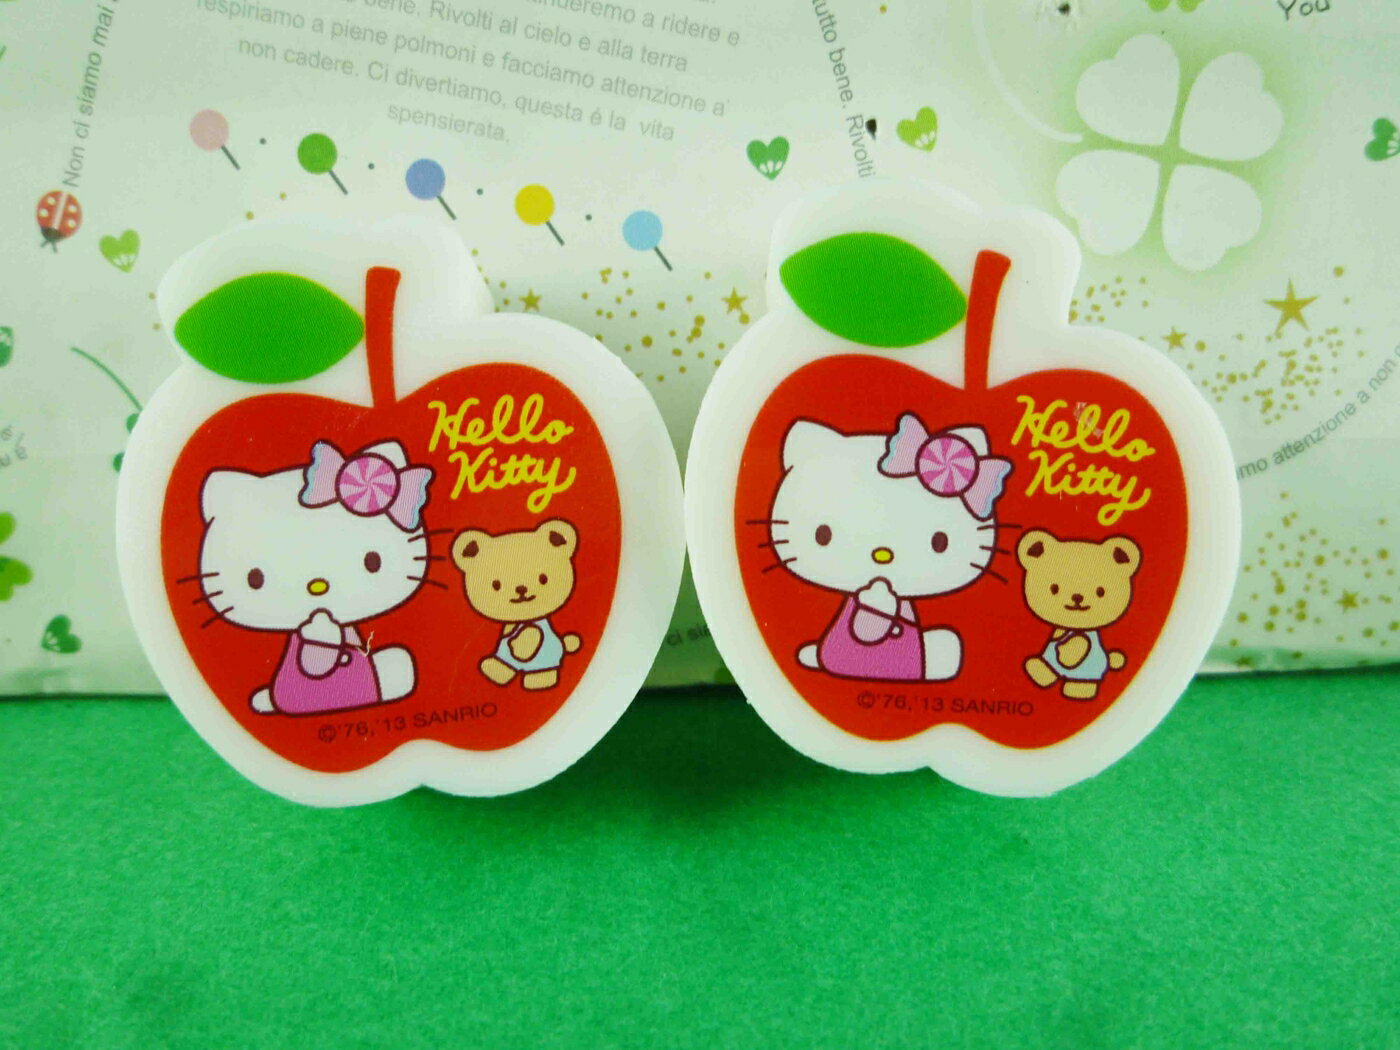 【震撼精品百貨】Hello Kitty 凱蒂貓 橡皮擦組-2入紅蘋果 震撼日式精品百貨